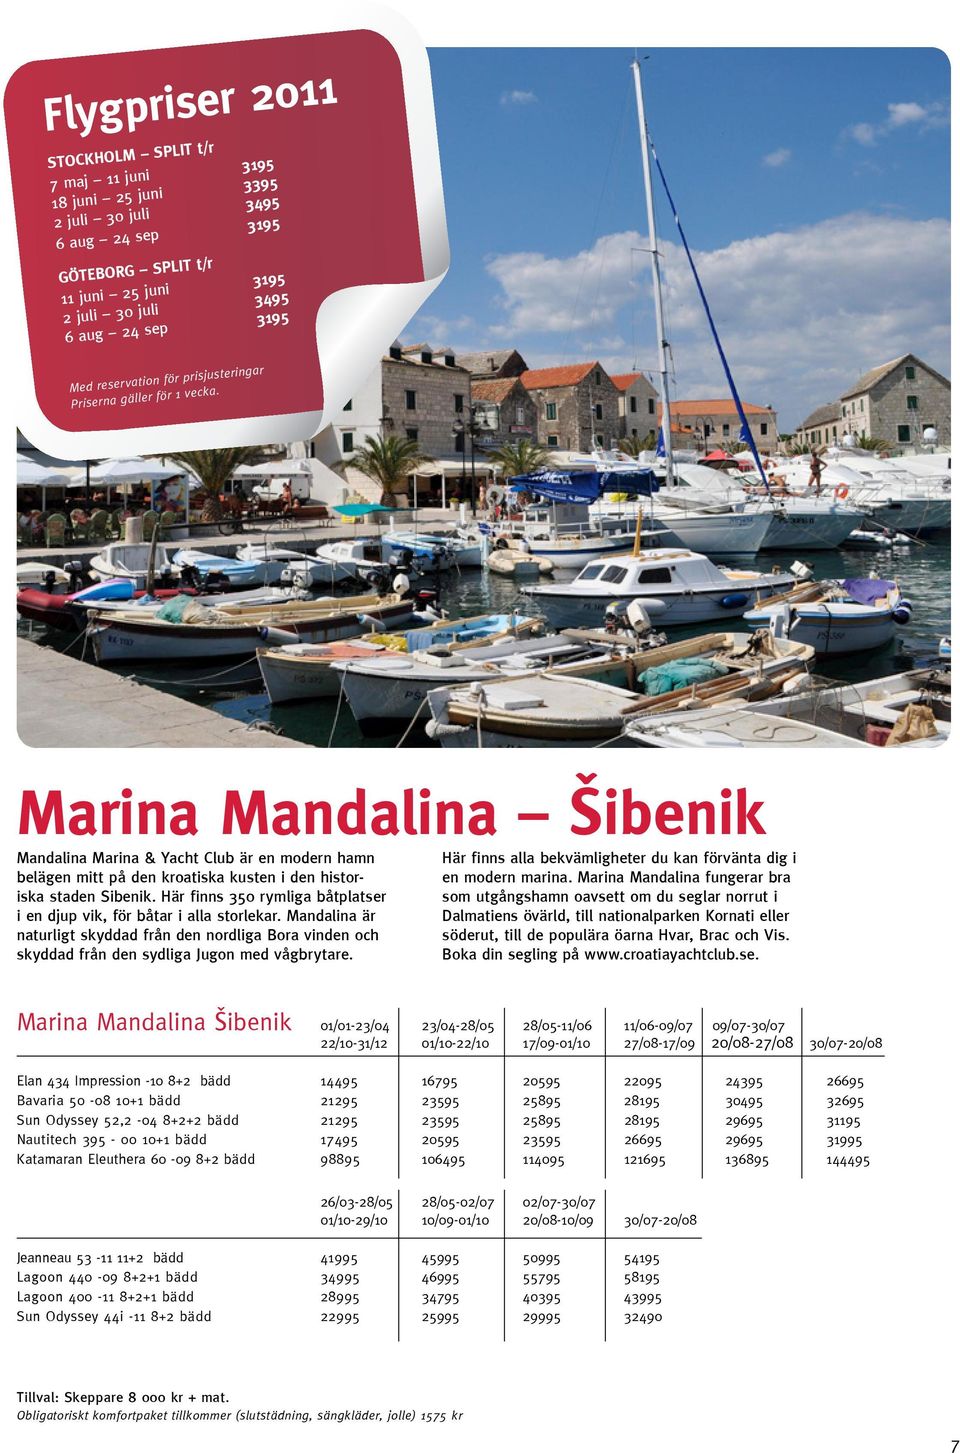 Marina Mandalina šibenik Mandalina Marina & Yacht Club är en modern hamn belägen mitt på den kroatiska kusten i den historiska staden Sibenik.